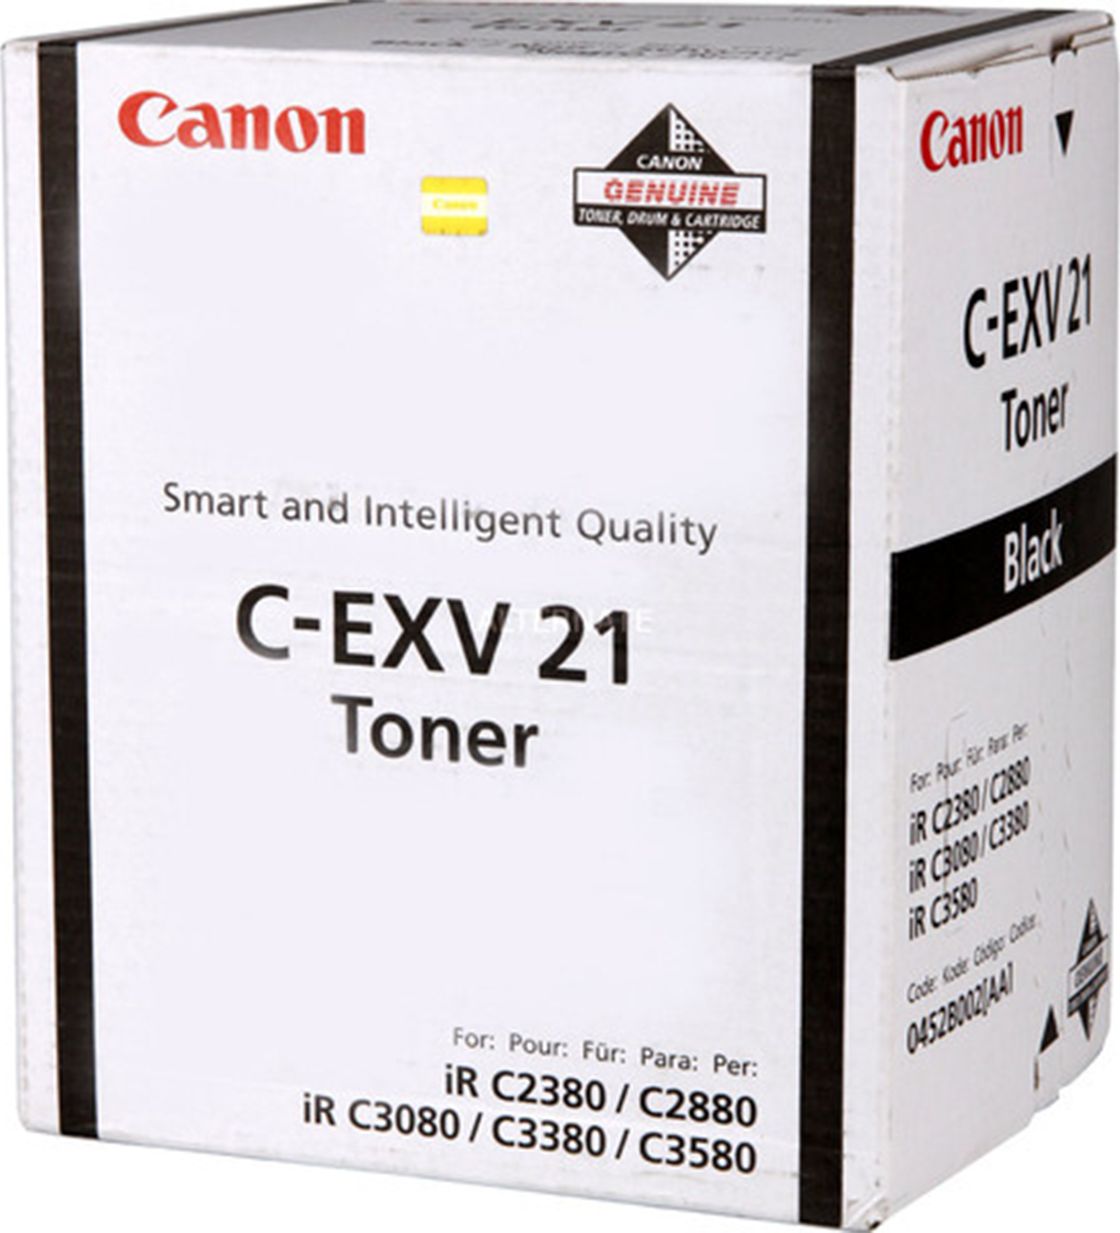 Toner Canon C-EXV 21 Negru